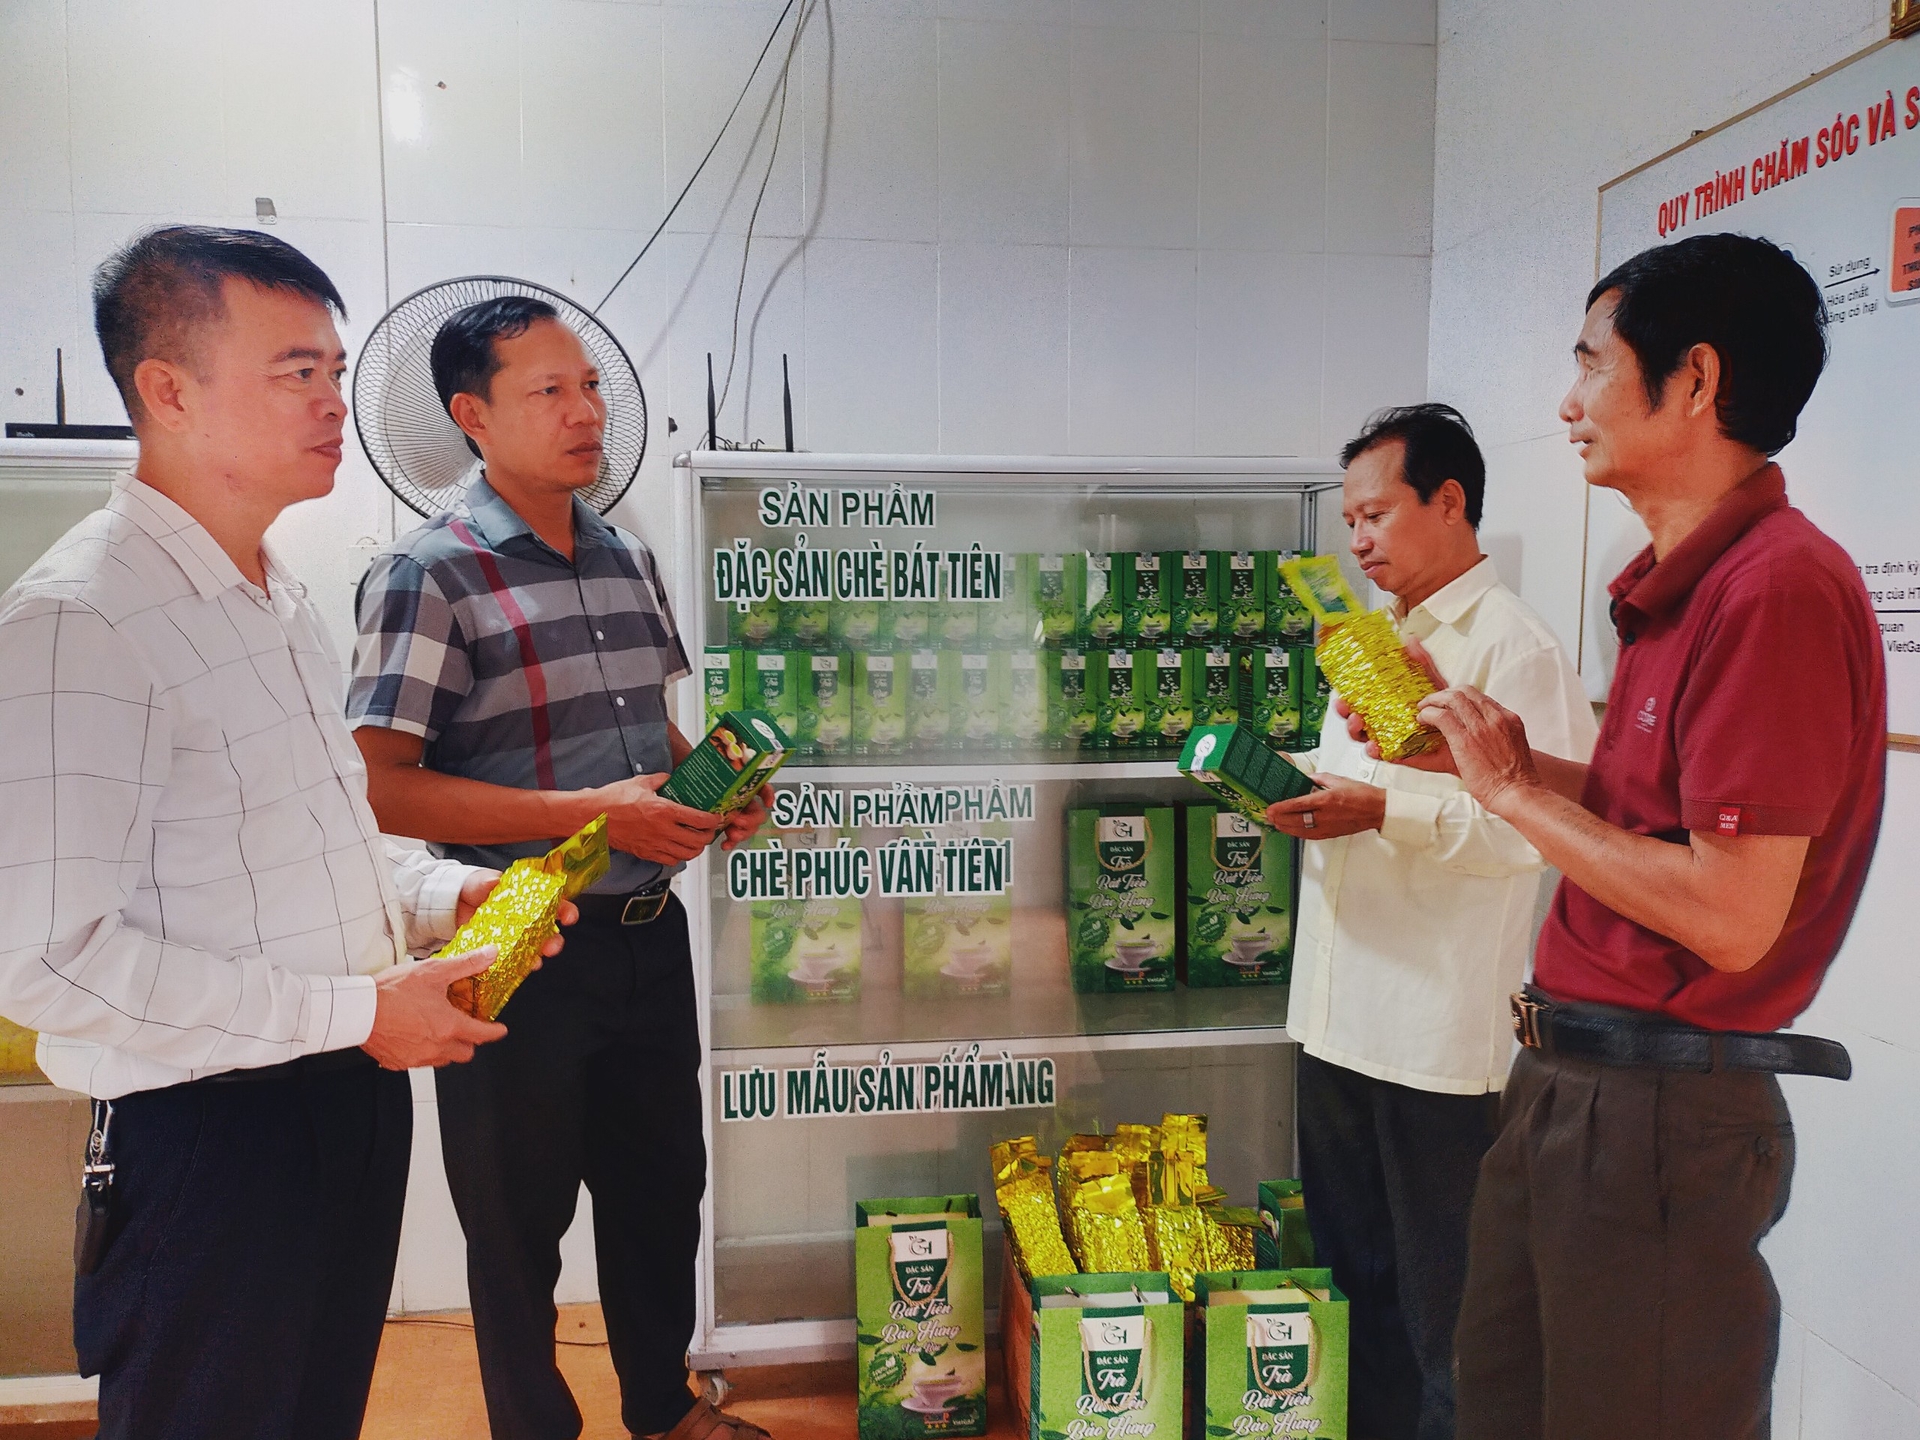 Hiện HTX Chè xanh chất lượng cao xã Bảo Hưng đã có 2 sản phẩm trà Bát Tiên đạt tiêu chuẩn OCOP cấp tỉnh. Ảnh: Thanh Tiến.